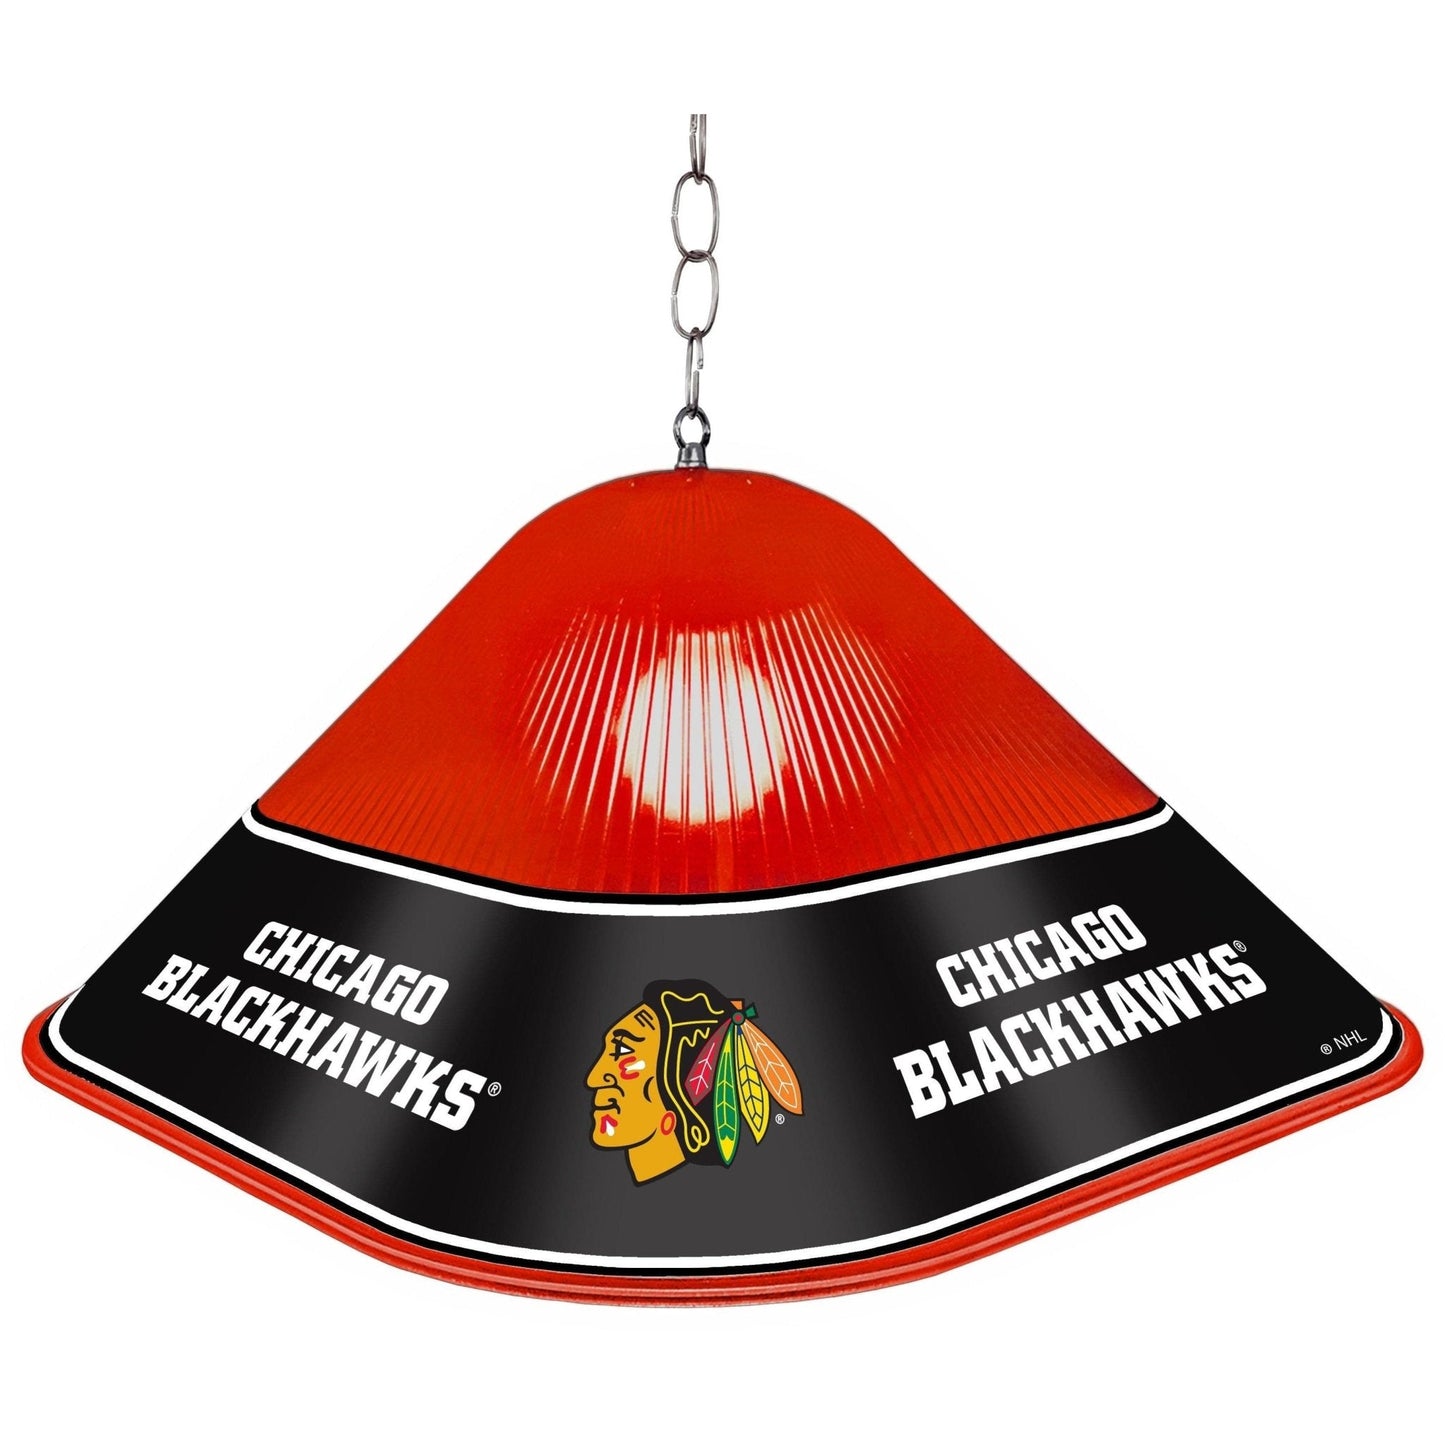 Chicago Blackhawks: Game Table Light - The Fan-Brand